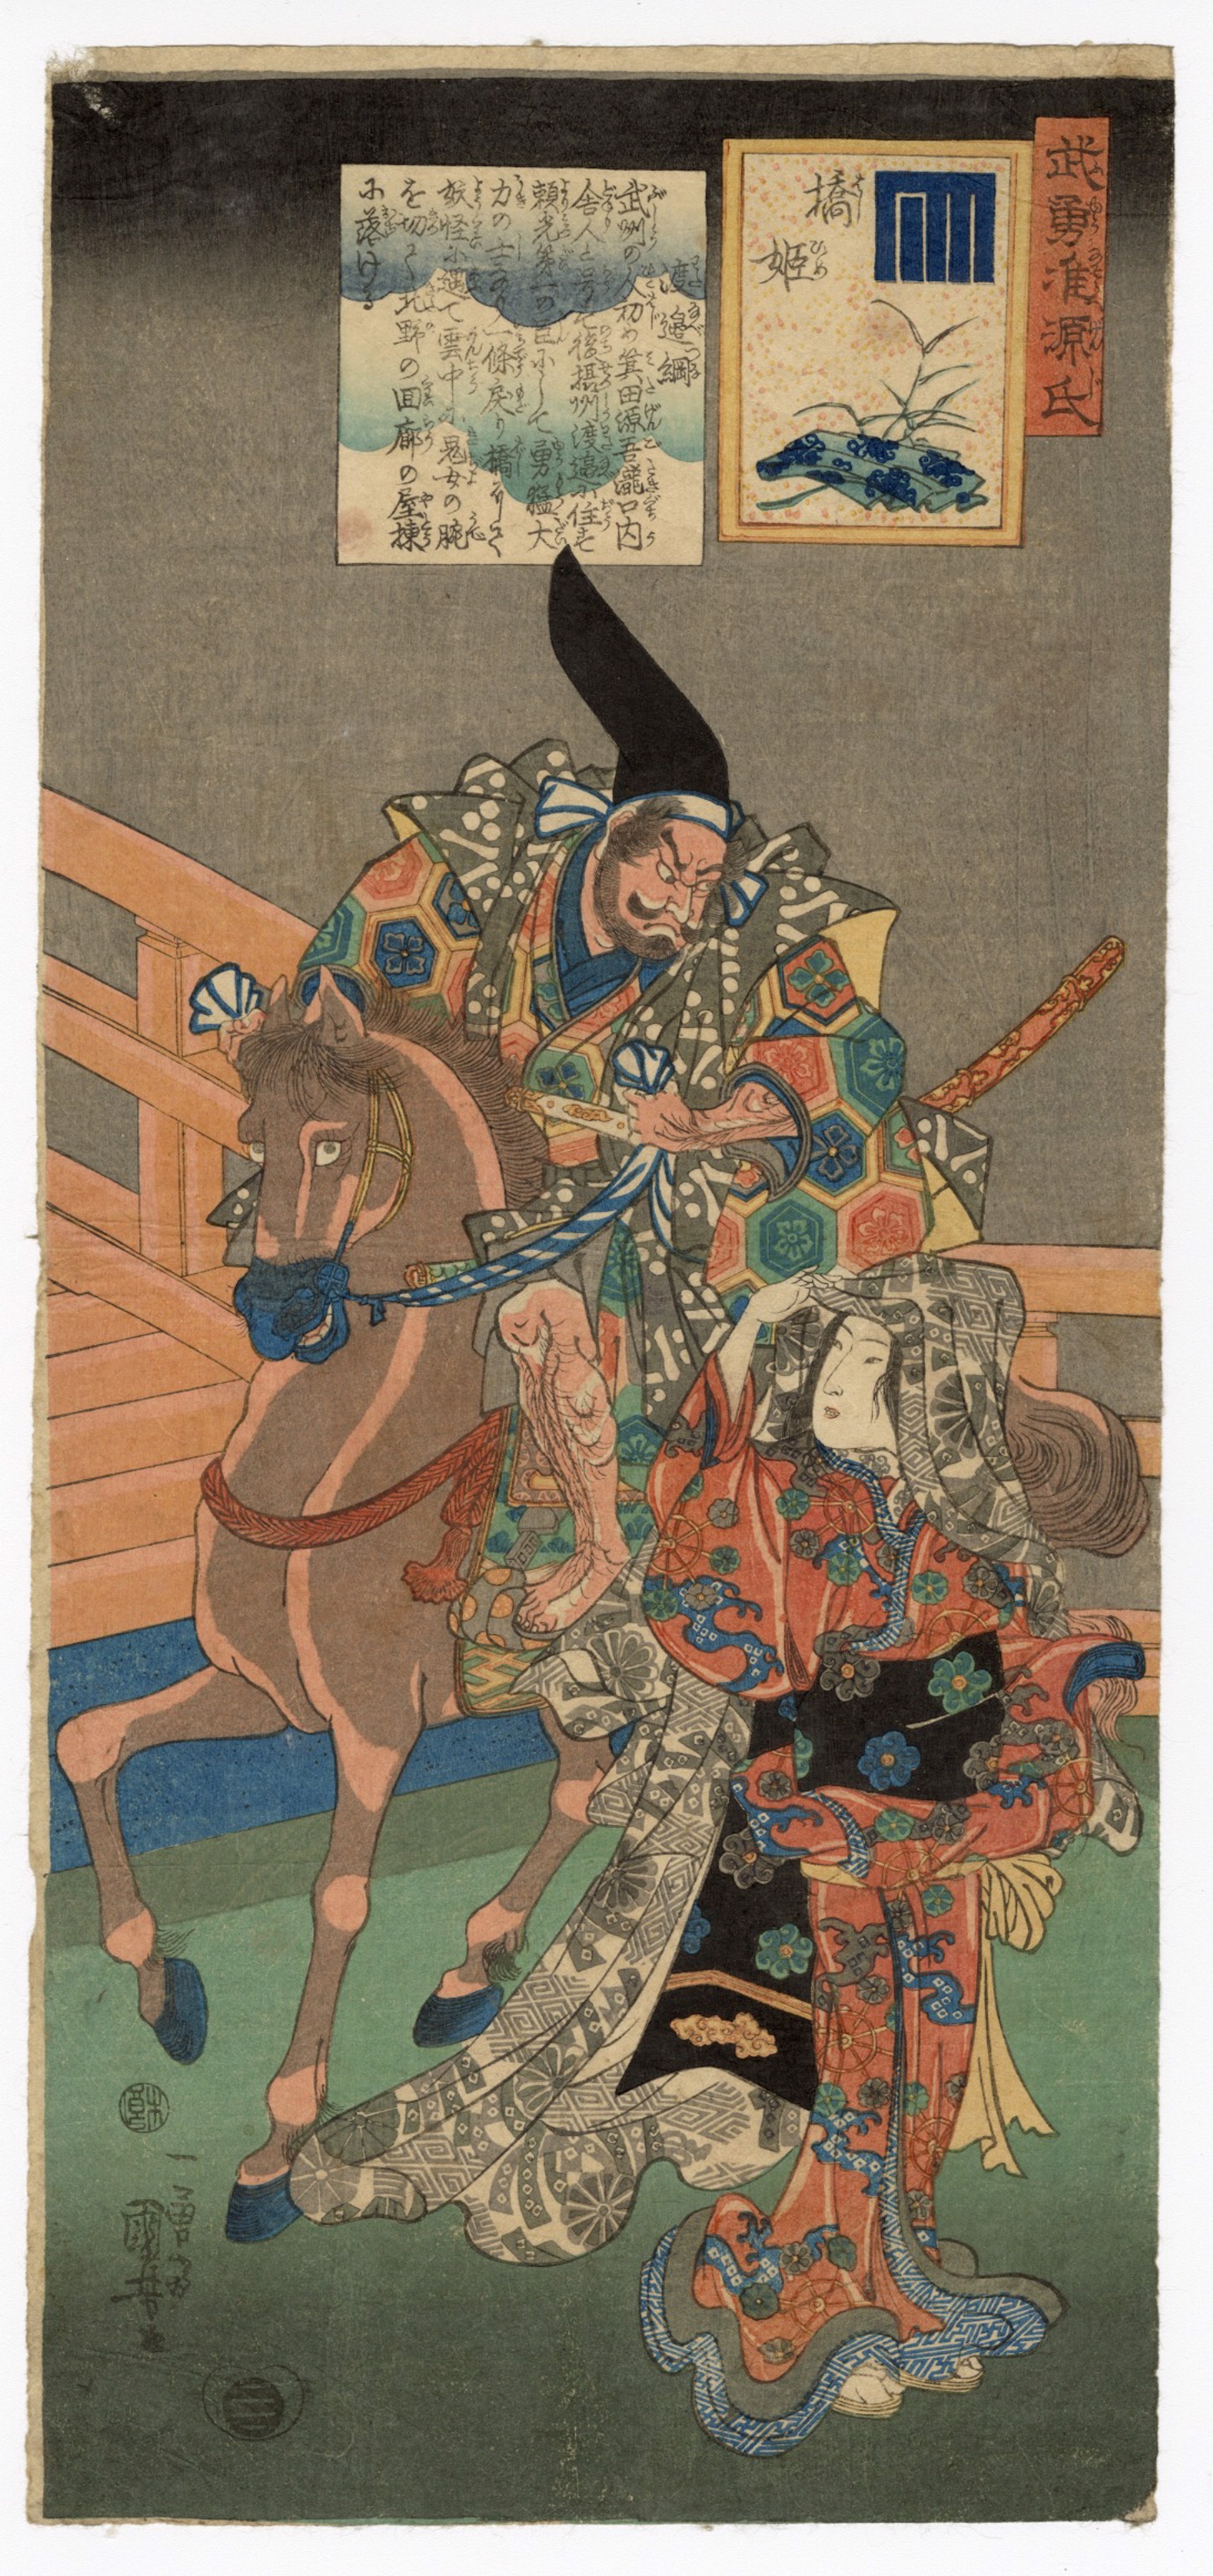 Hashihime (Lady of the Bridge) by Kuniyoshi